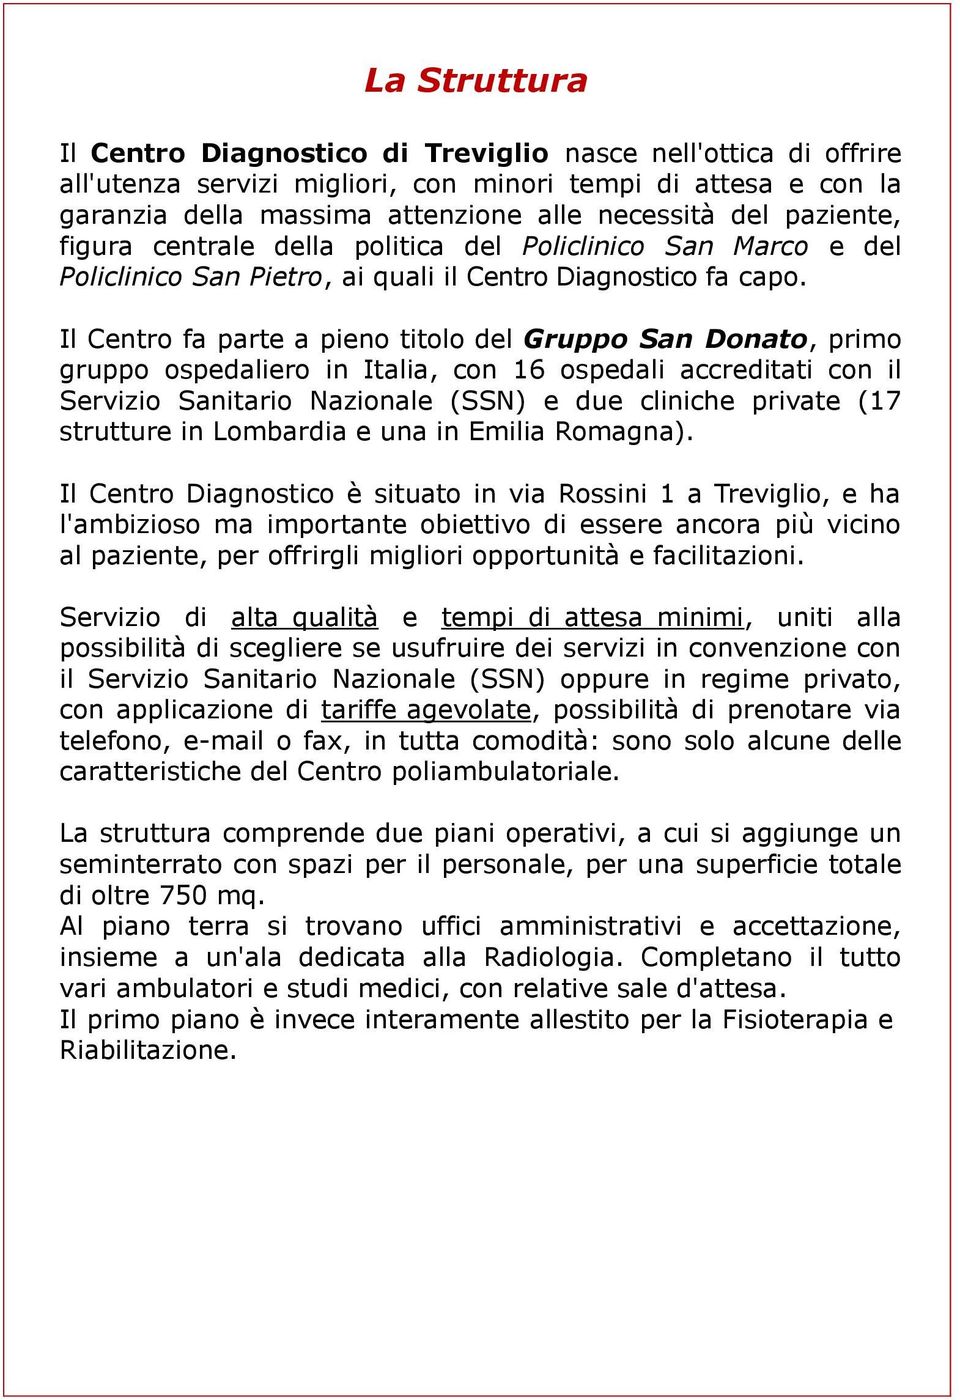 Il Centro fa parte a pieno titolo del Gruppo San Donato, primo gruppo ospedaliero in Italia, con 16 ospedali accreditati con il Servizio Sanitario Nazionale (SSN) e due cliniche private (17 strutture